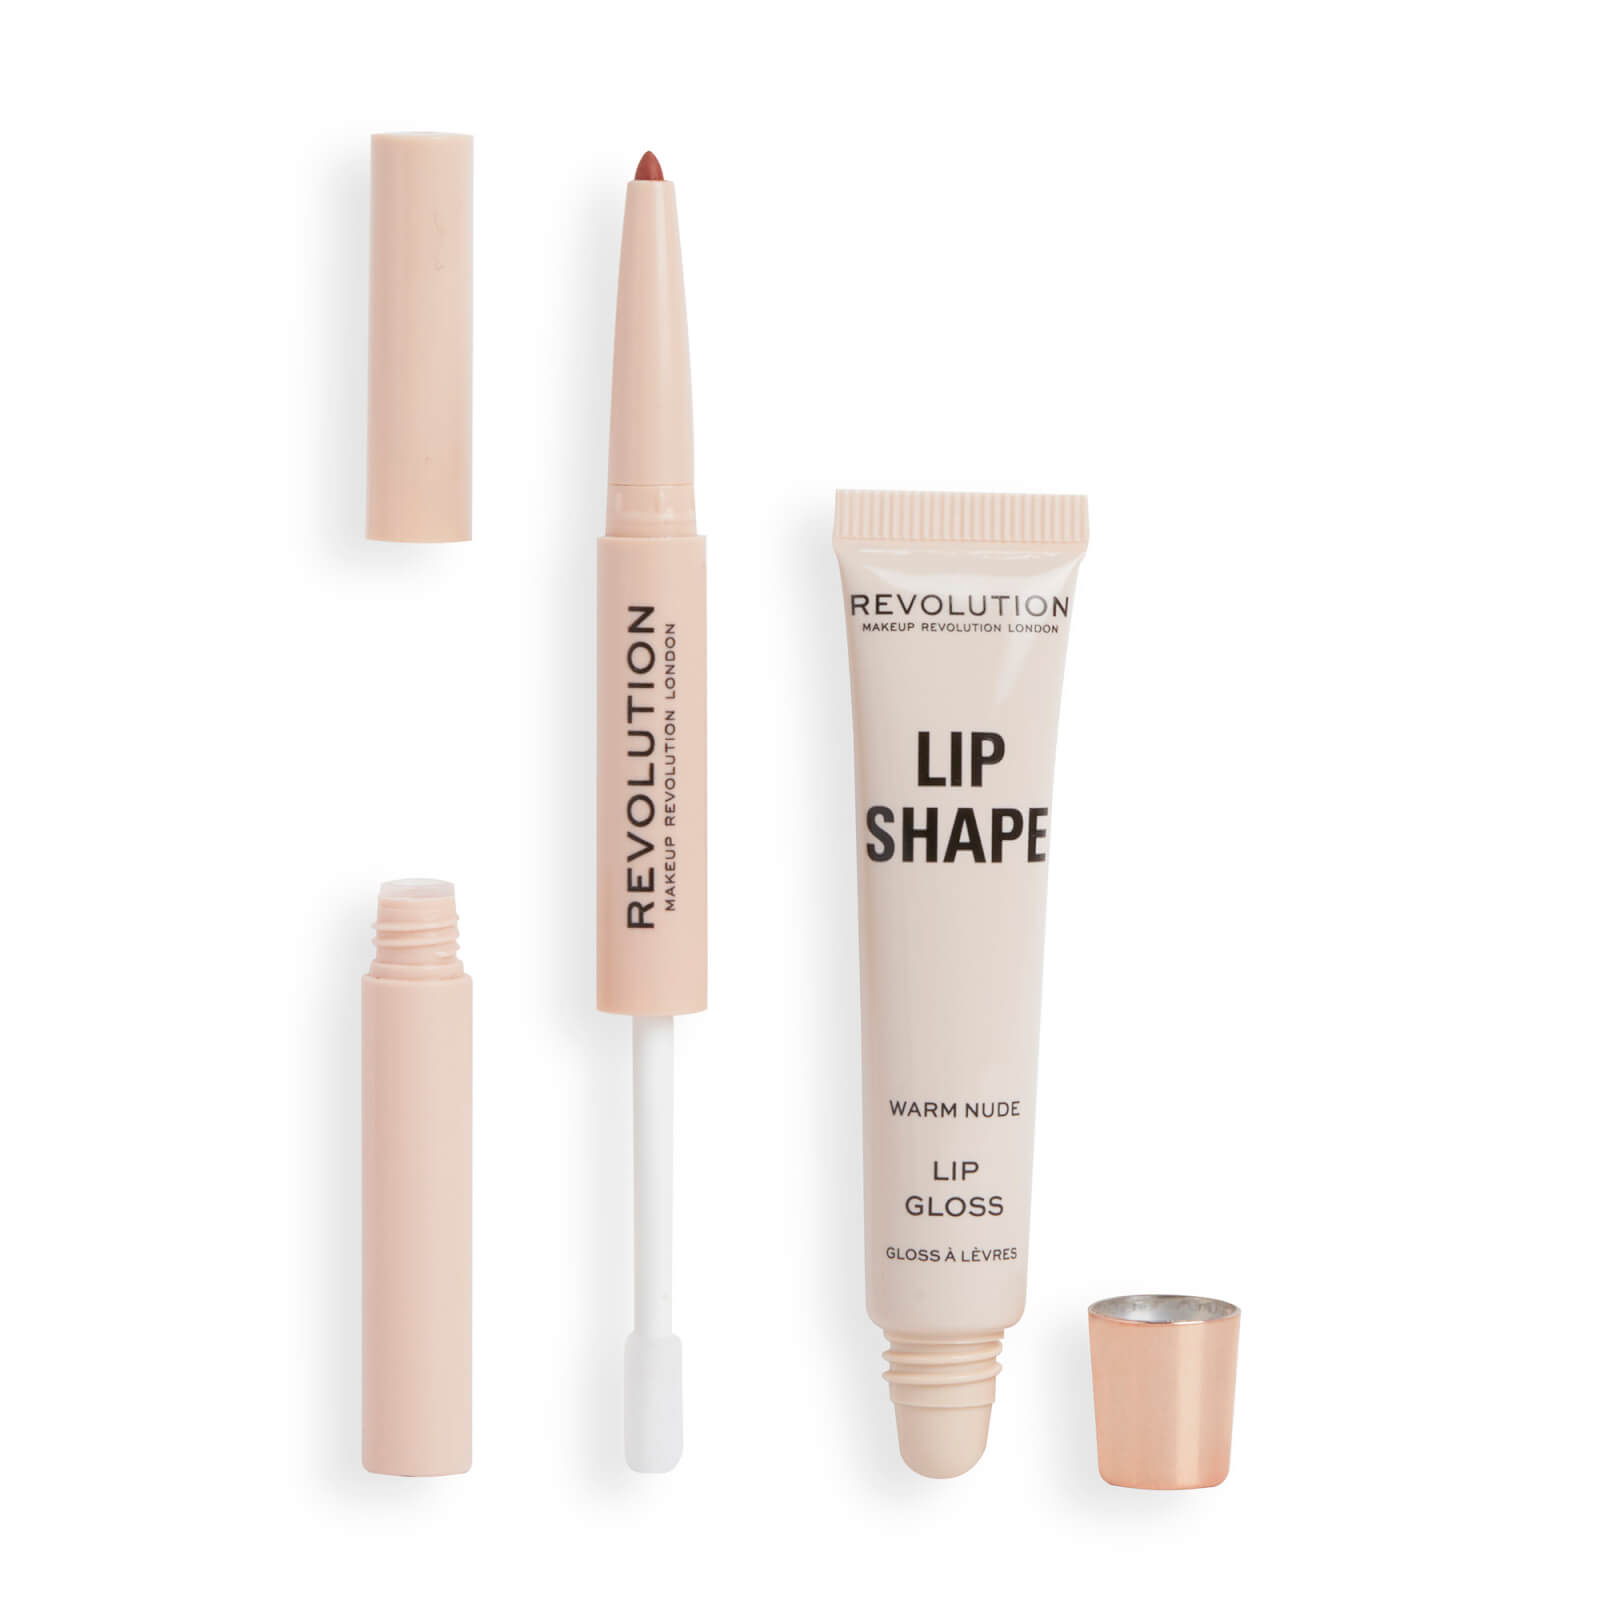 Revolution Beauty Lip Shape Kit - Warm Nude In Warm Nude